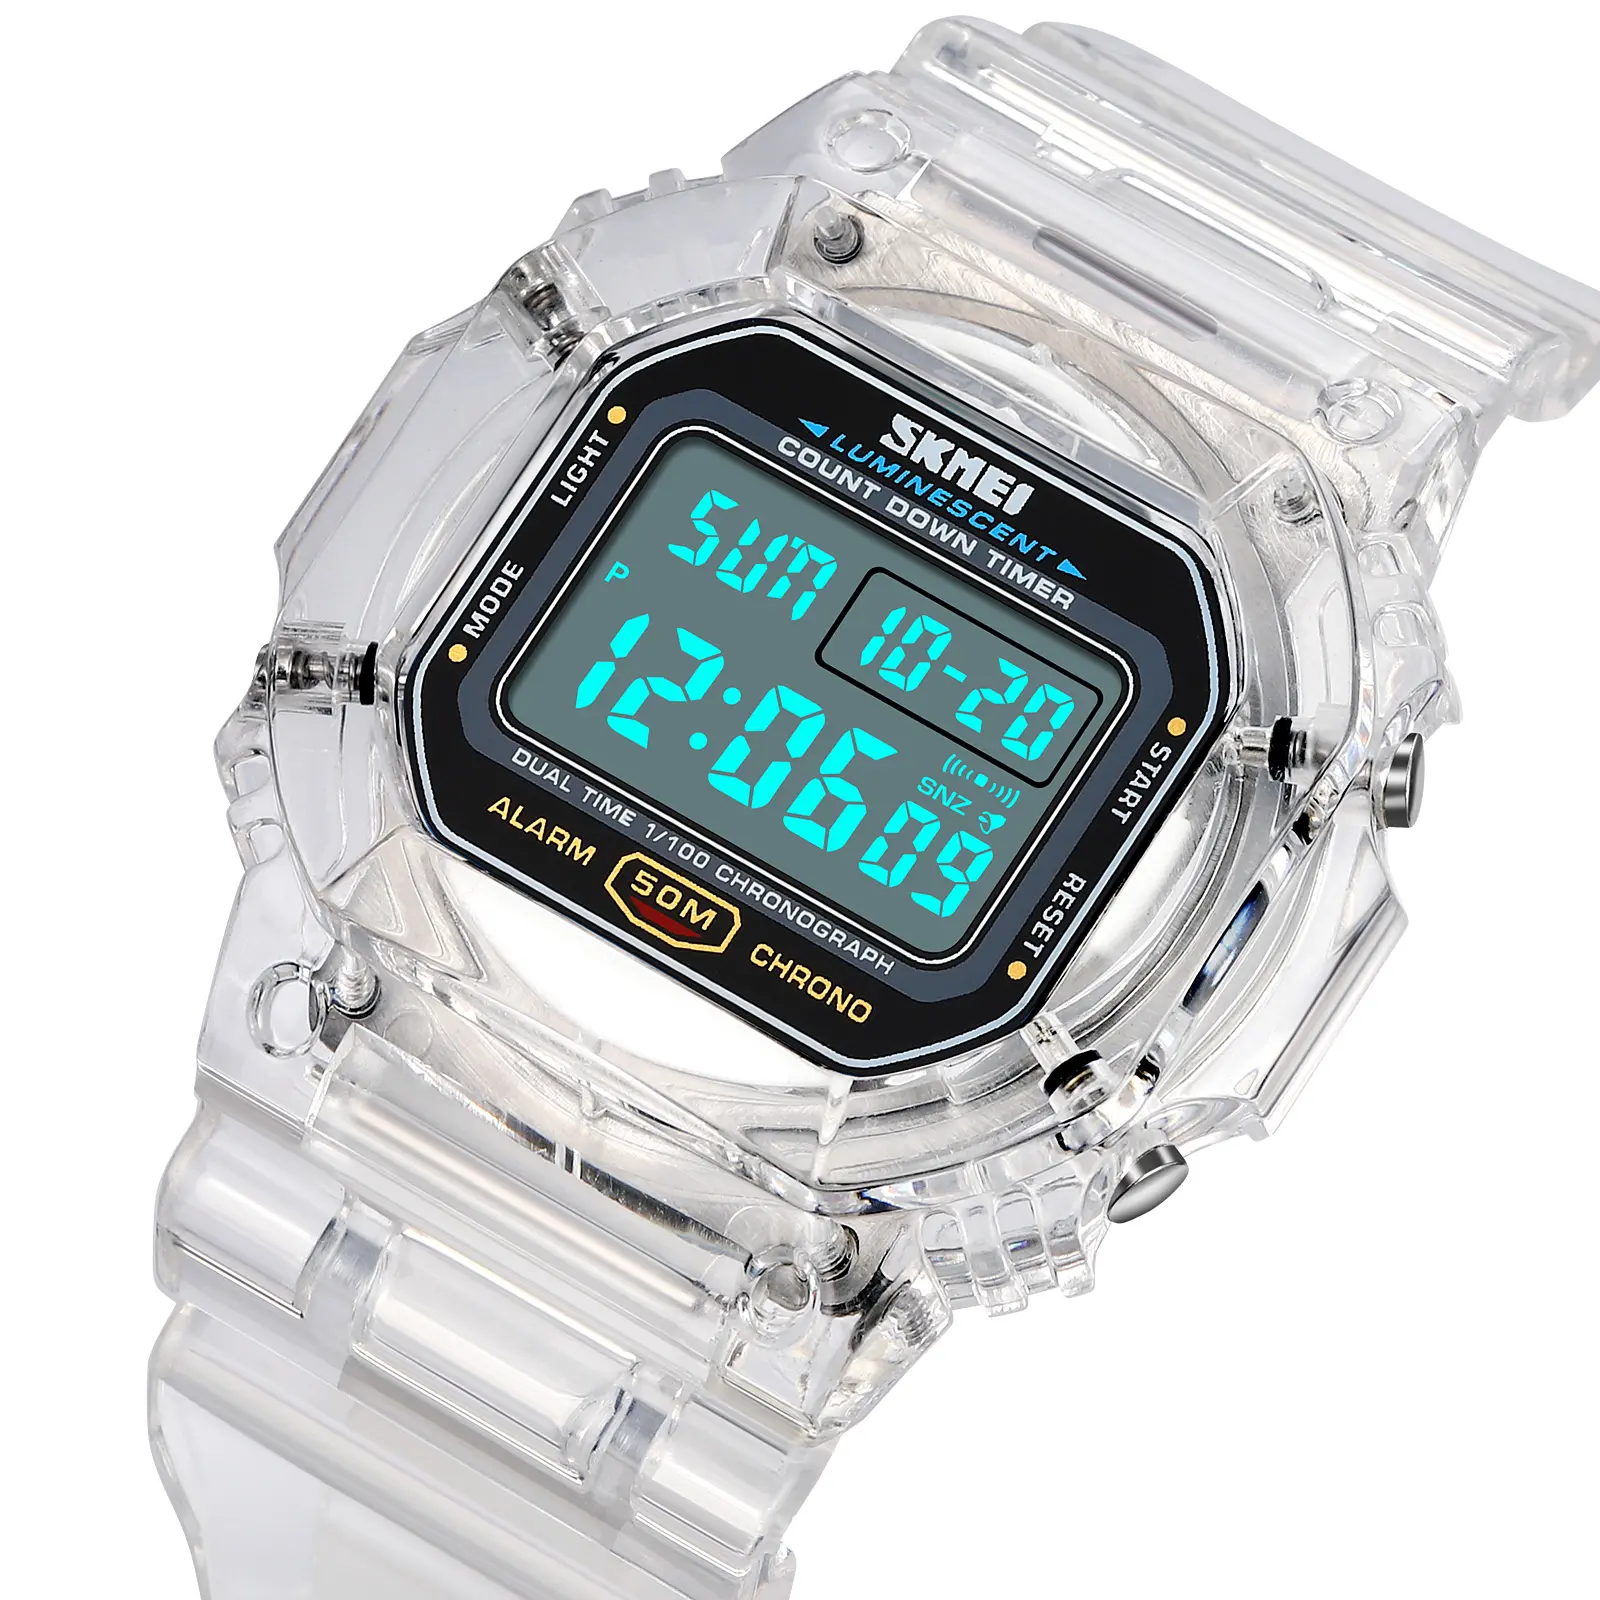 Skmei 1999 fashion reloj de hombre LE light transparente watch 50m vintage Wristwatches chronograph Led Digital Sports Watches